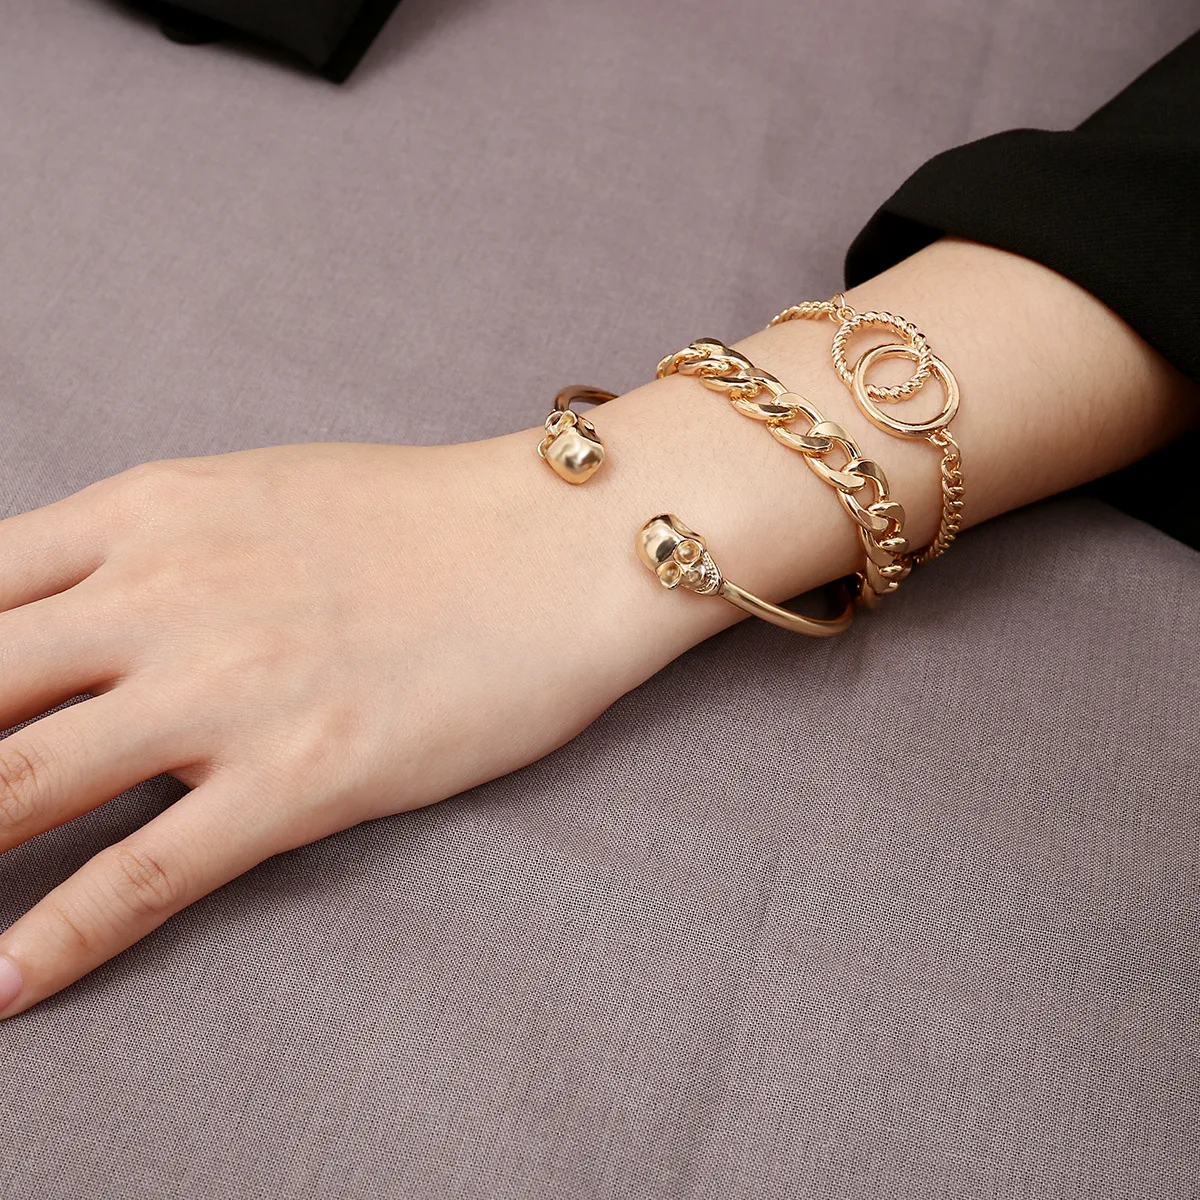 Золотой браслет на руке женщины